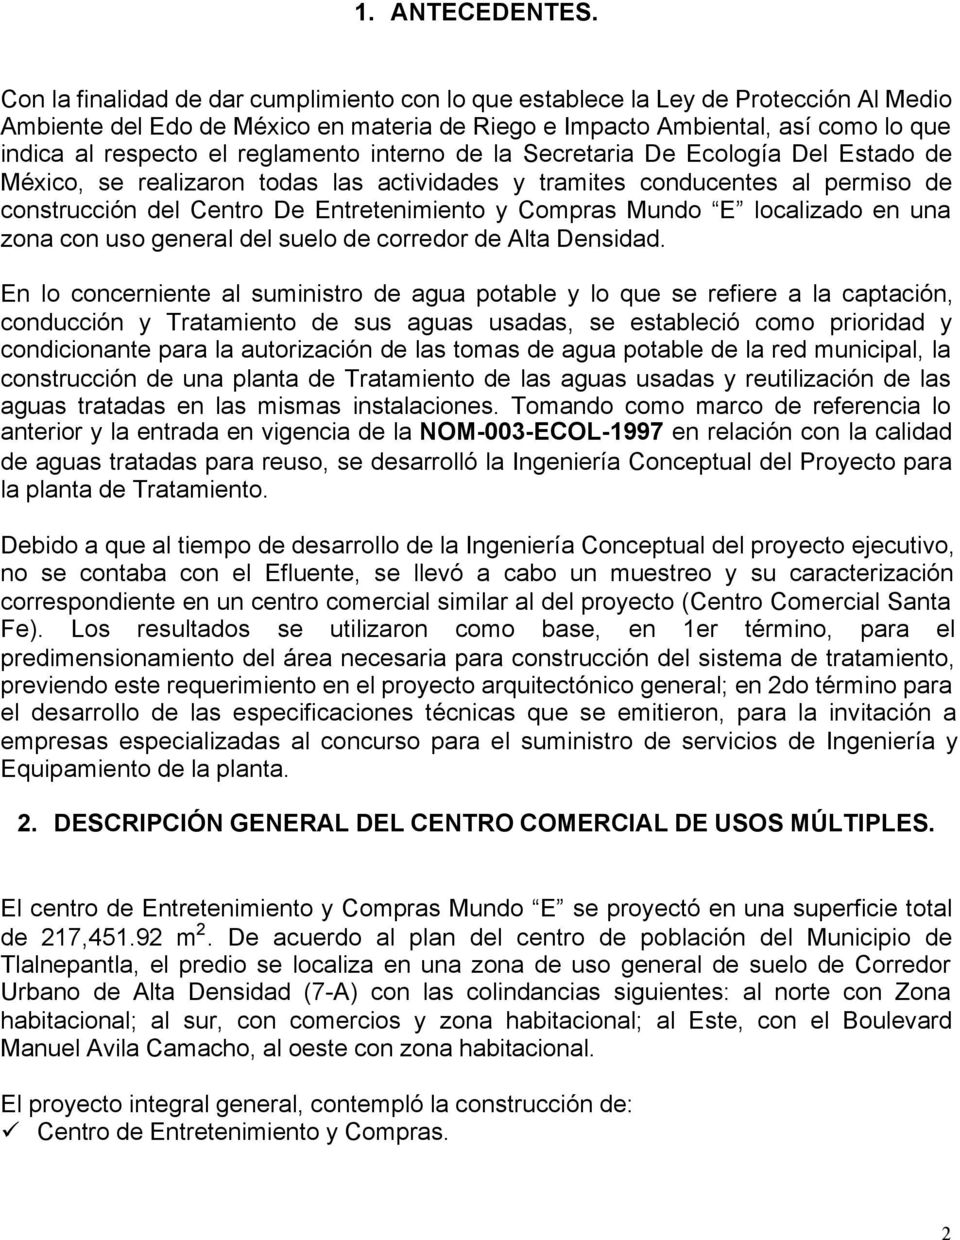 reglamento interno de la Secretaria De Ecología Del Estado de México, se realizaron todas las actividades y tramites conducentes al permiso de construcción del Centro De Entretenimiento y Compras